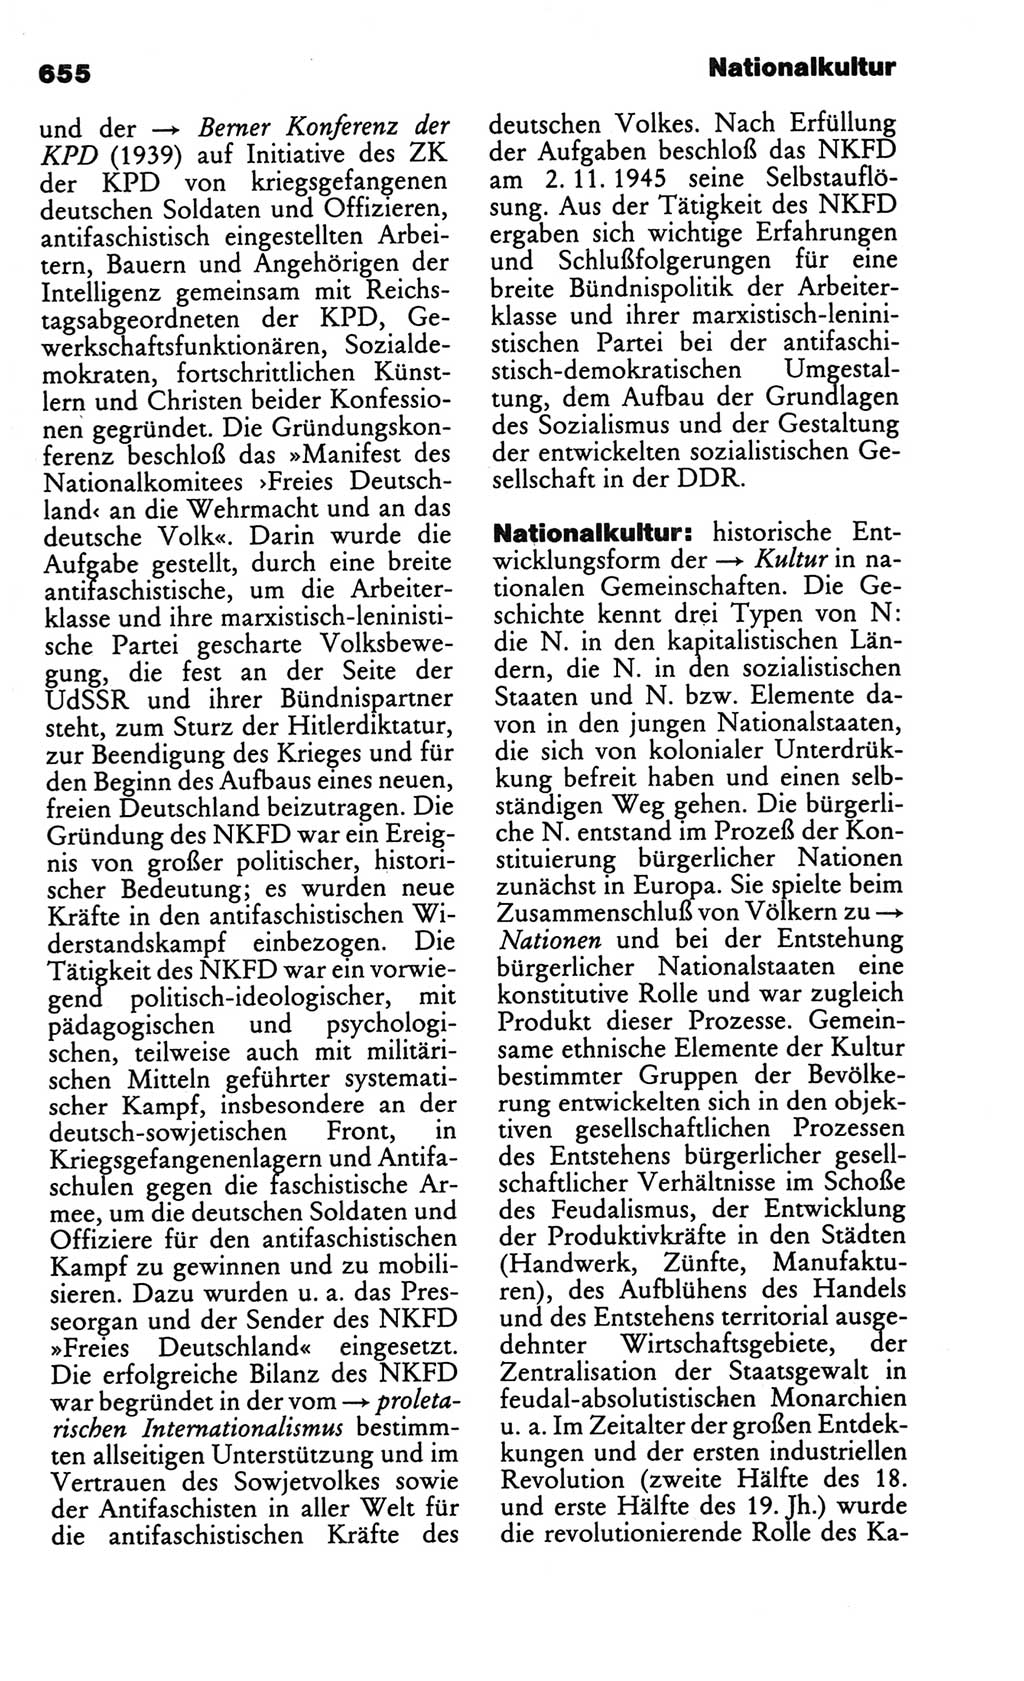 Kleines politisches Wörterbuch [Deutsche Demokratische Republik (DDR)] 1986, Seite 655 (Kl. pol. Wb. DDR 1986, S. 655)